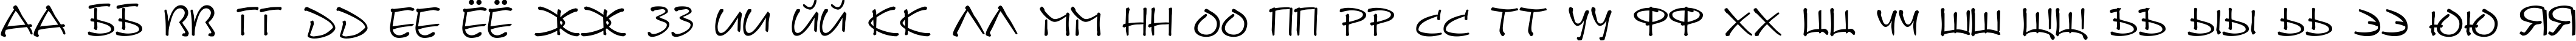 Пример написания русского алфавита шрифтом DS Note